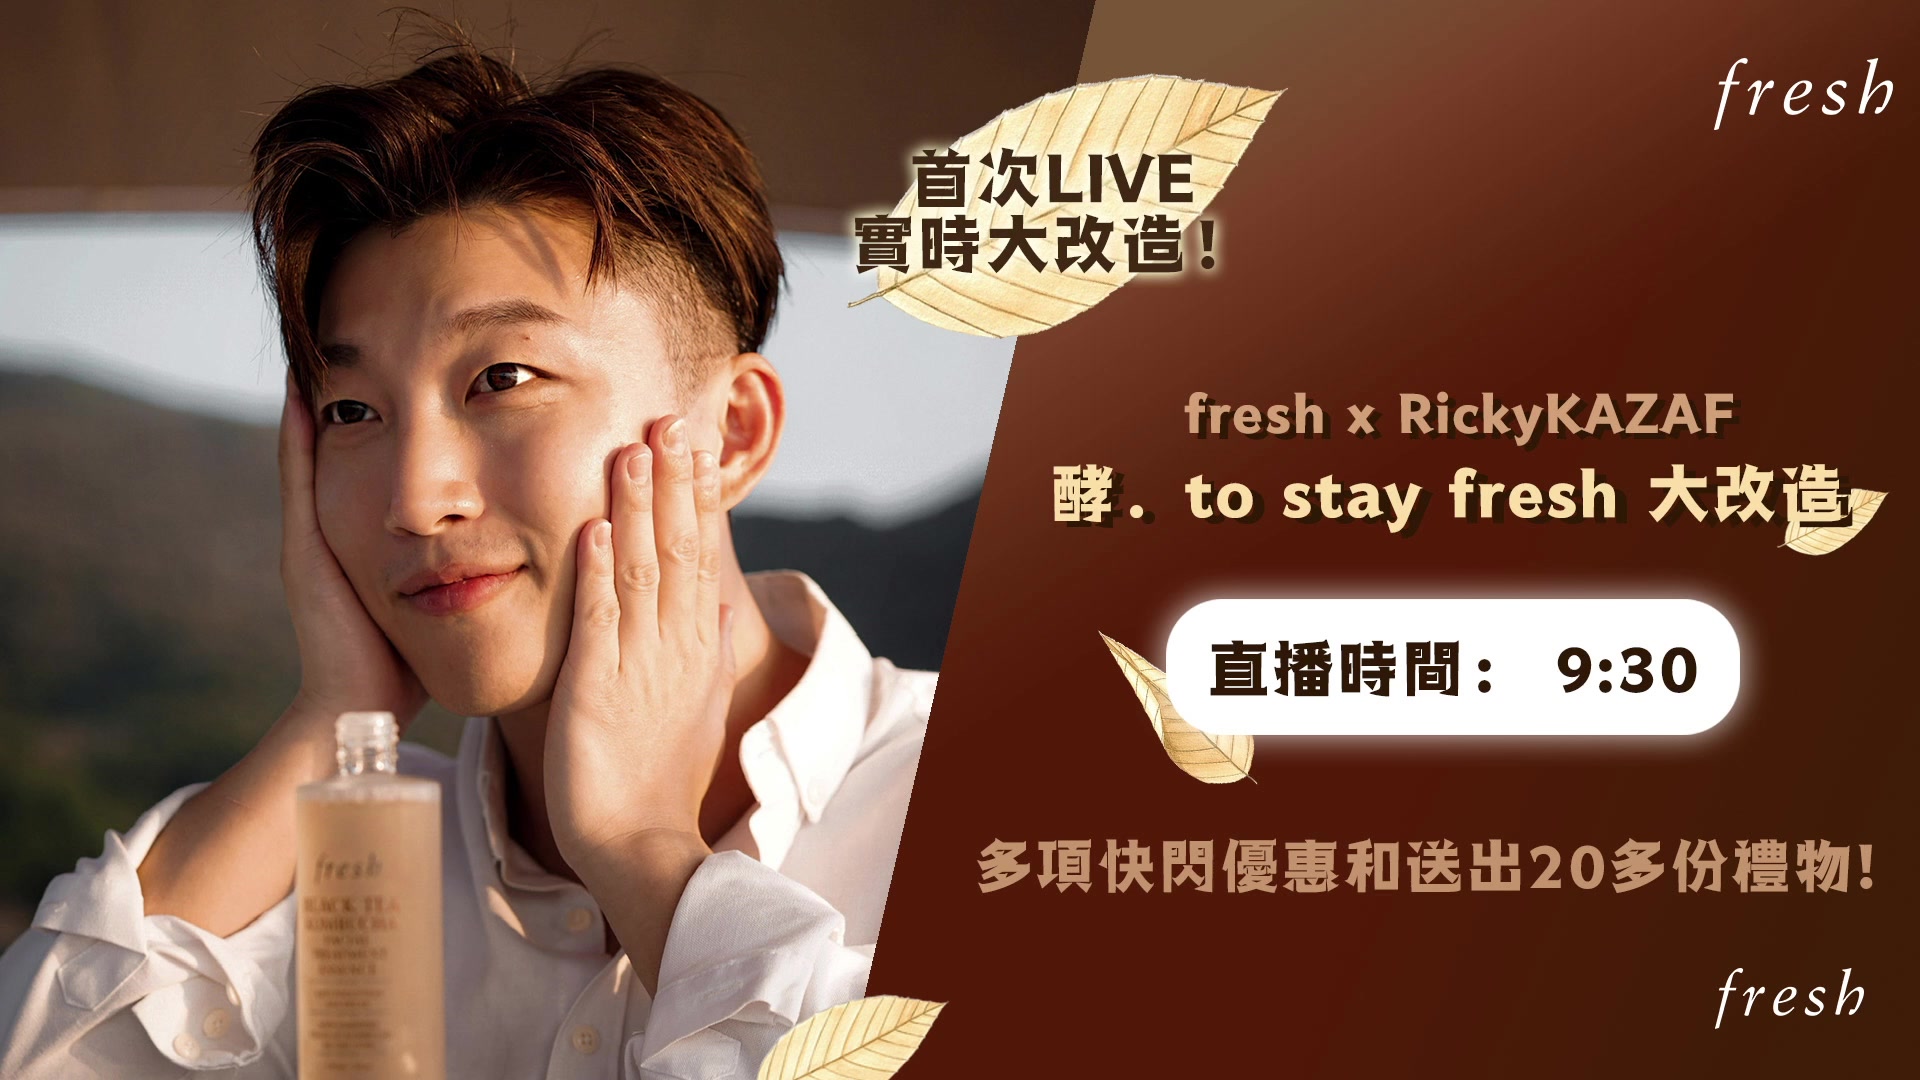 2021年首個 #Freshie教室 特別邀請 RickyKAZAF 及特別嘉賓 阿餅 Ben Li進行實時大改造!! 同您分享新一年✨ 酵 • to stay fresh ✨ 小tips！ 1月13日 9:30PM Facebook Live直播期間至1月19日11:59PM，於官網購買🧧指定產品: festivalwalk 輸入推廣碼【RICKY】，即可獲HK$410禮物🎁 ！包括: